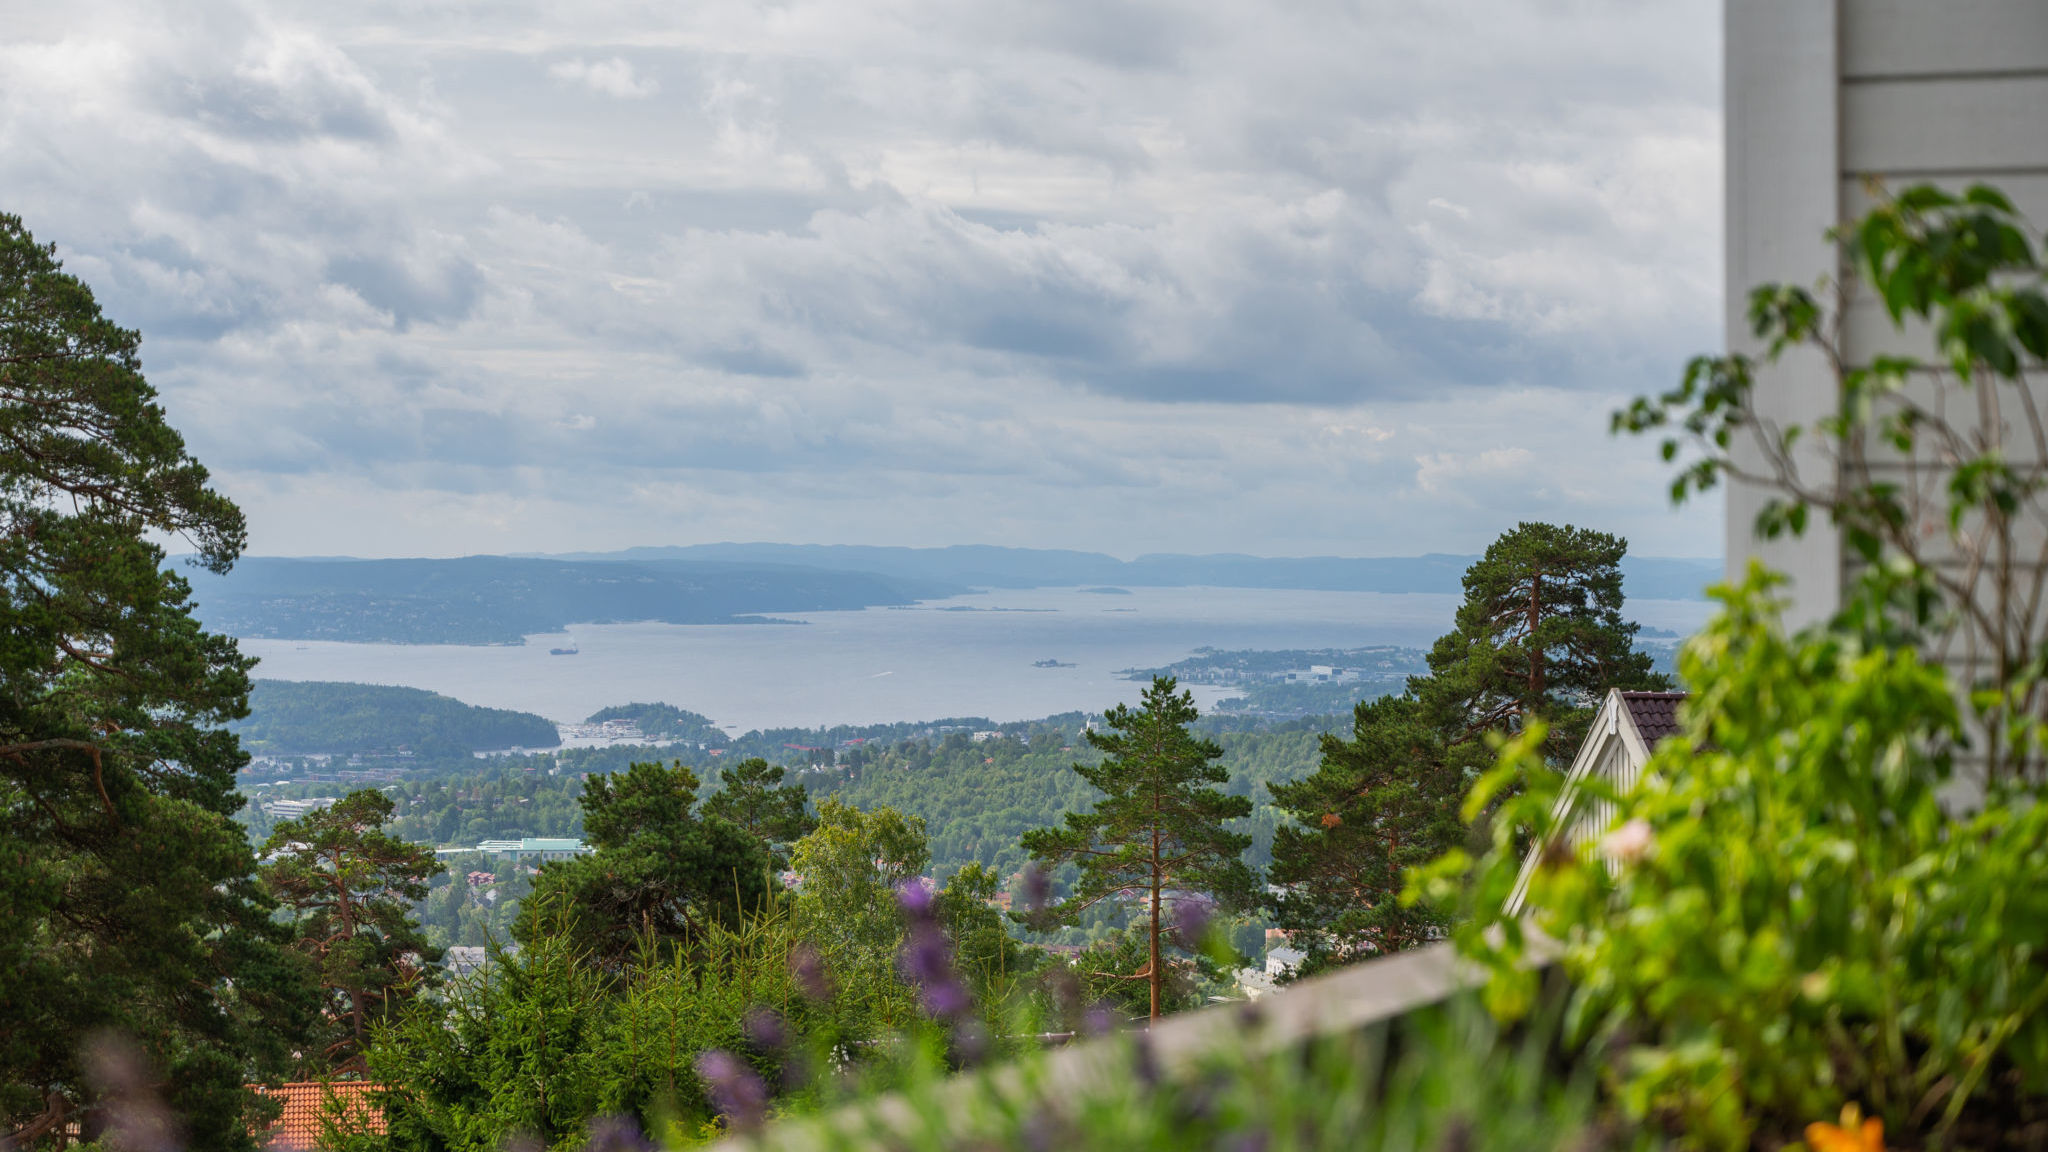 Fantastisk panorama over Oslo hvor man ser fra Nordstrandsplatået i øst via Nesodden og fjorden i syd til Askerlandet i vest.